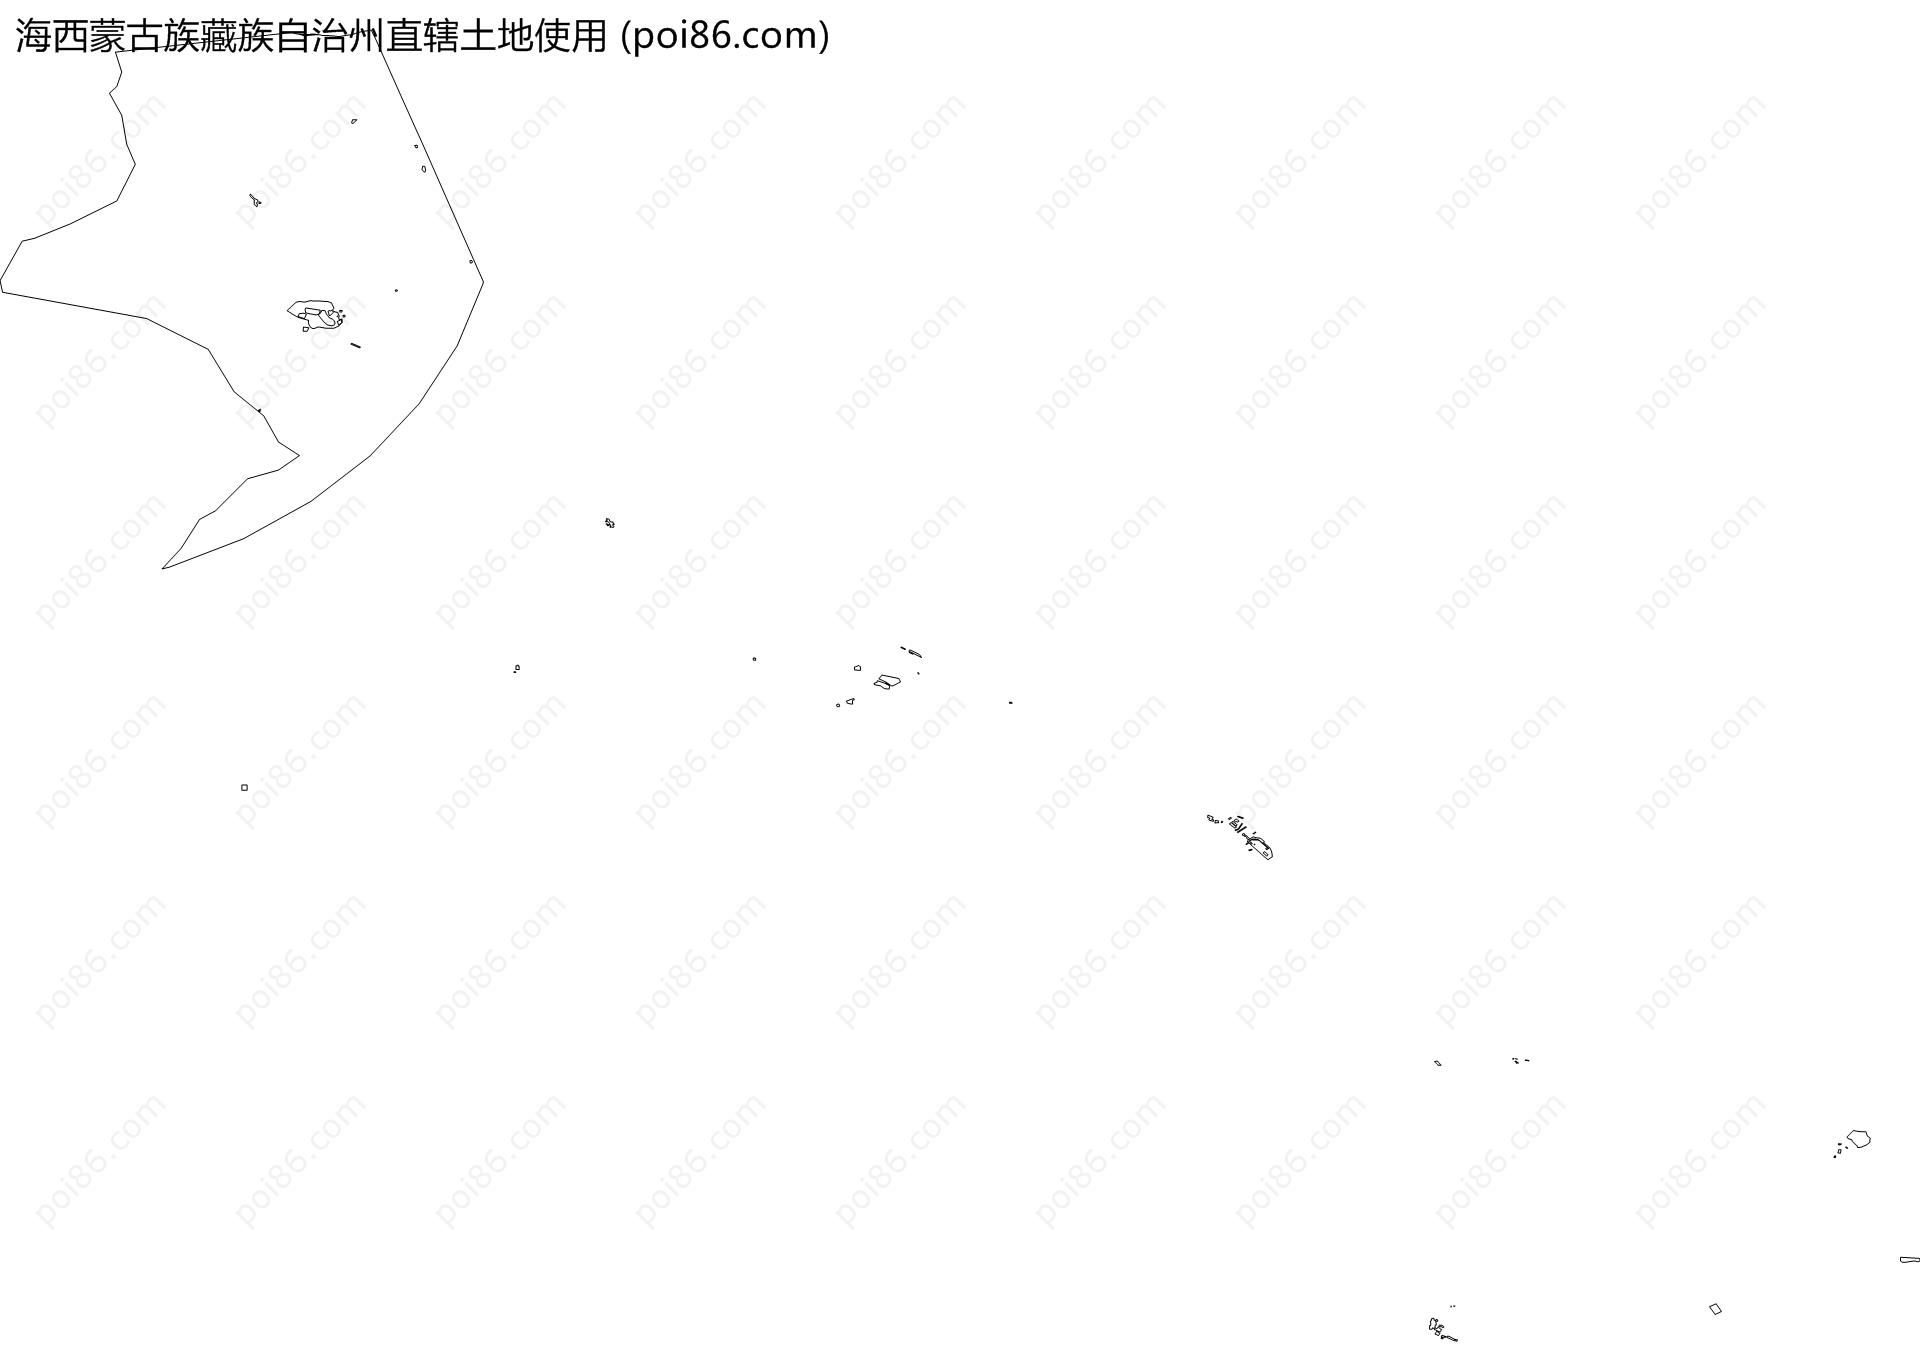 海西蒙古族藏族自治州直辖土地使用地图